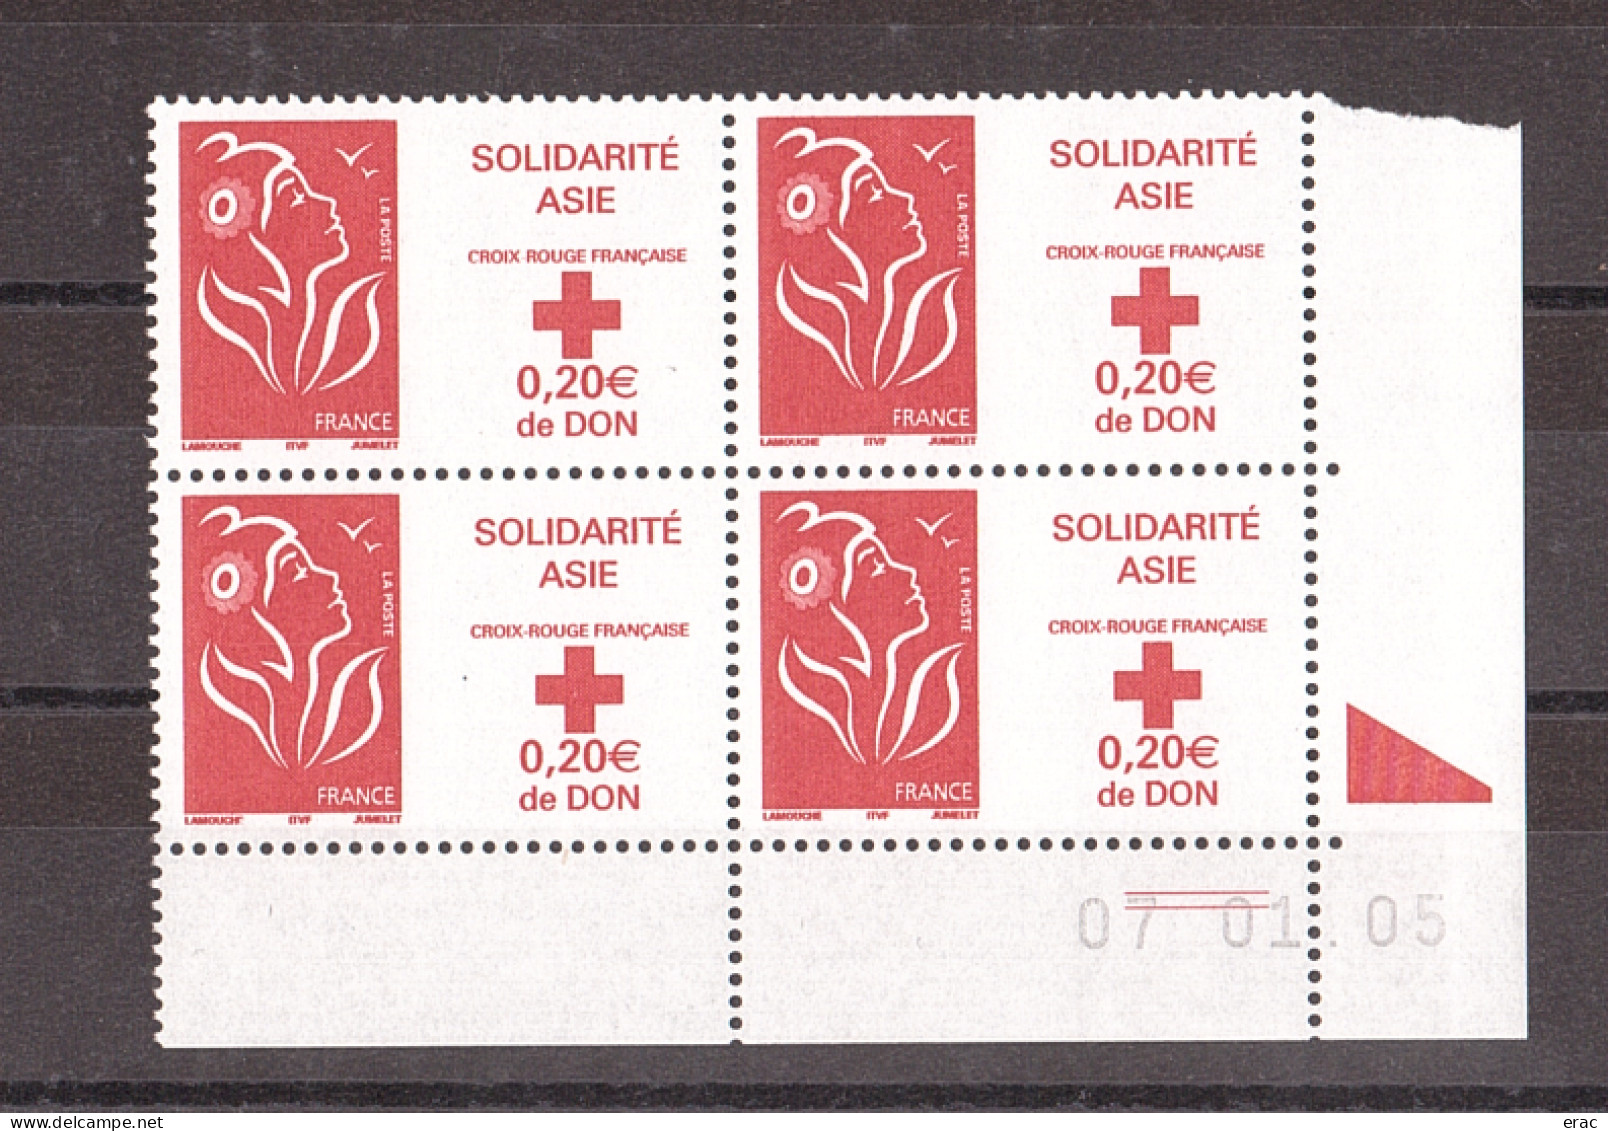 France - 2005 - Coin Daté 07.01.05 Du N° 3745 - Neuf ** - Marianne De Lamouche - Solidarité Asie - Croix-Rouge - 2000-2009